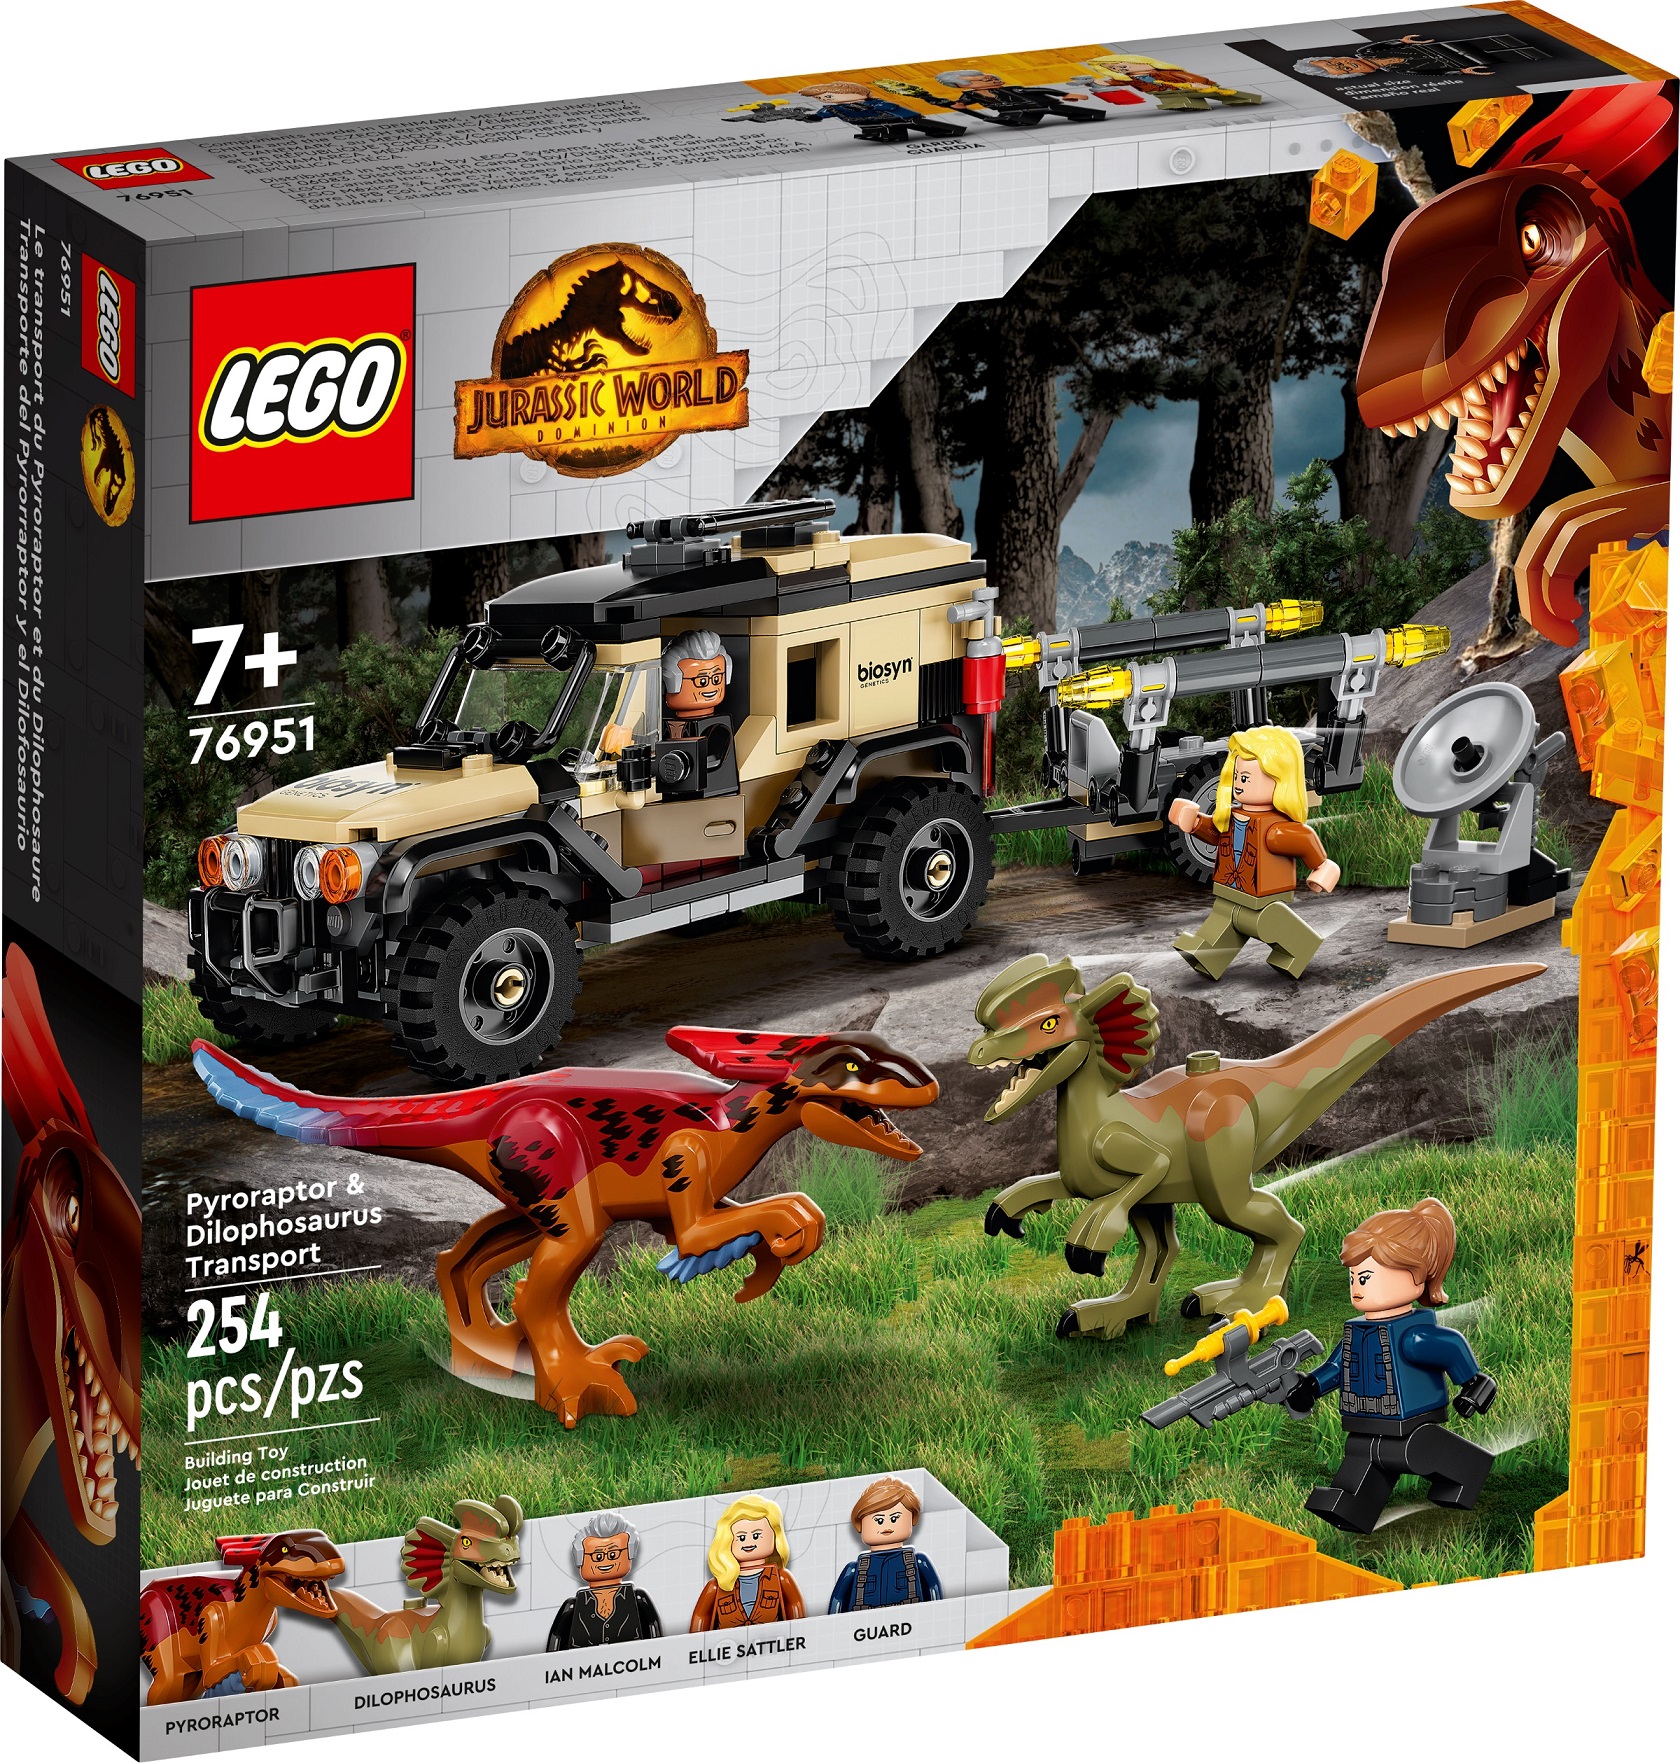 Lego Jurassic World Images 